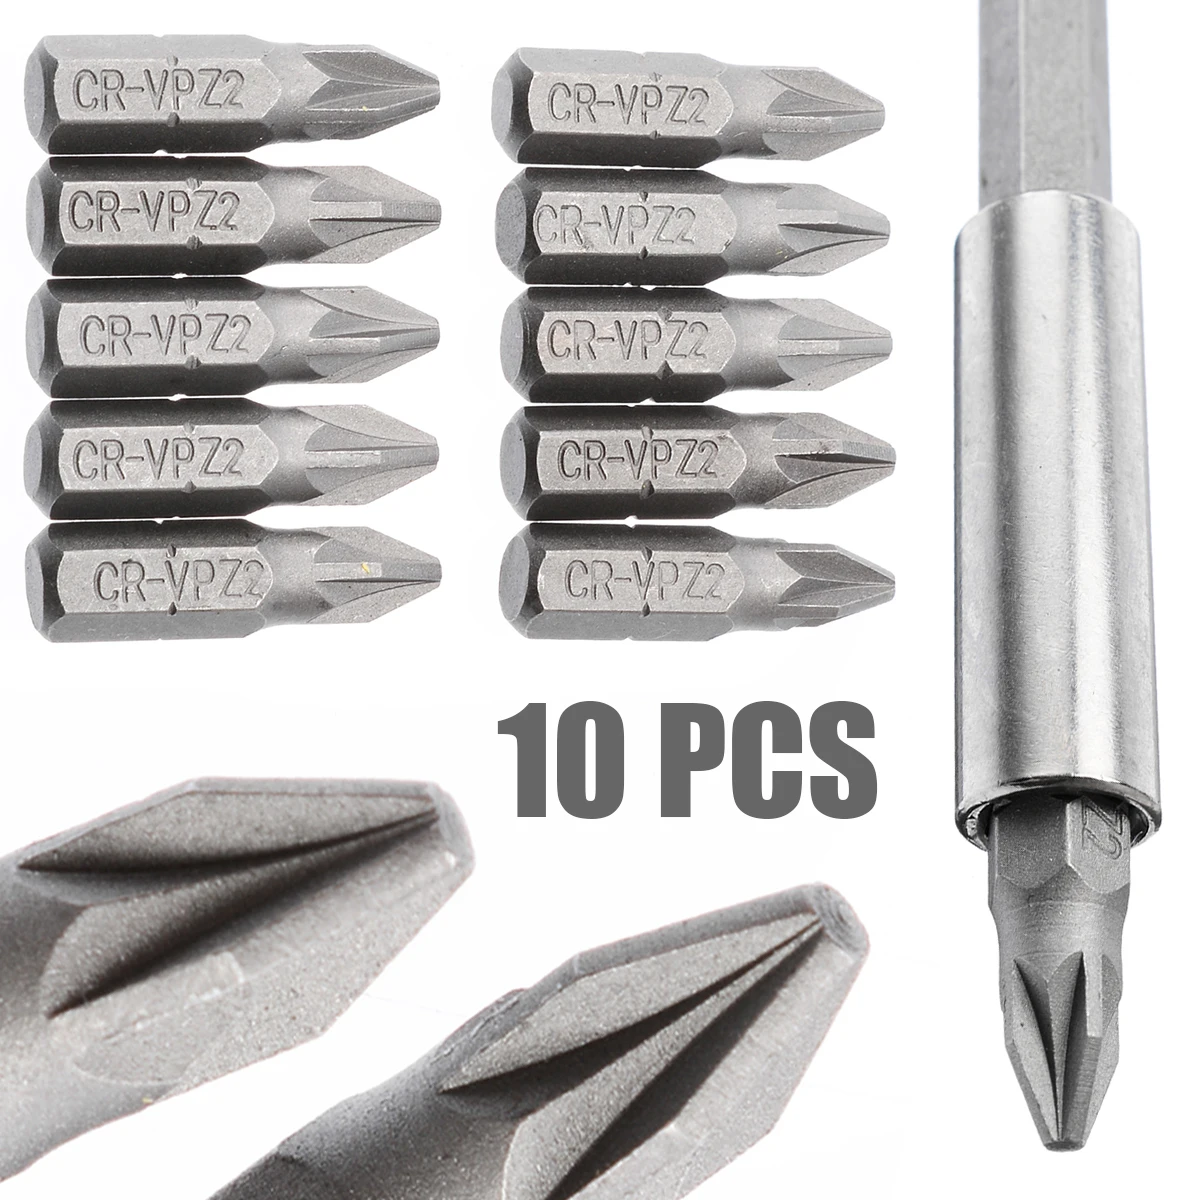 

10Pcs Silver Pozi 2 PZ2 x 25mm Alloy Steel Drive Screwdriver Bits Hex Tools 6.35mm Hex Shank 1/4'' Hand Tools